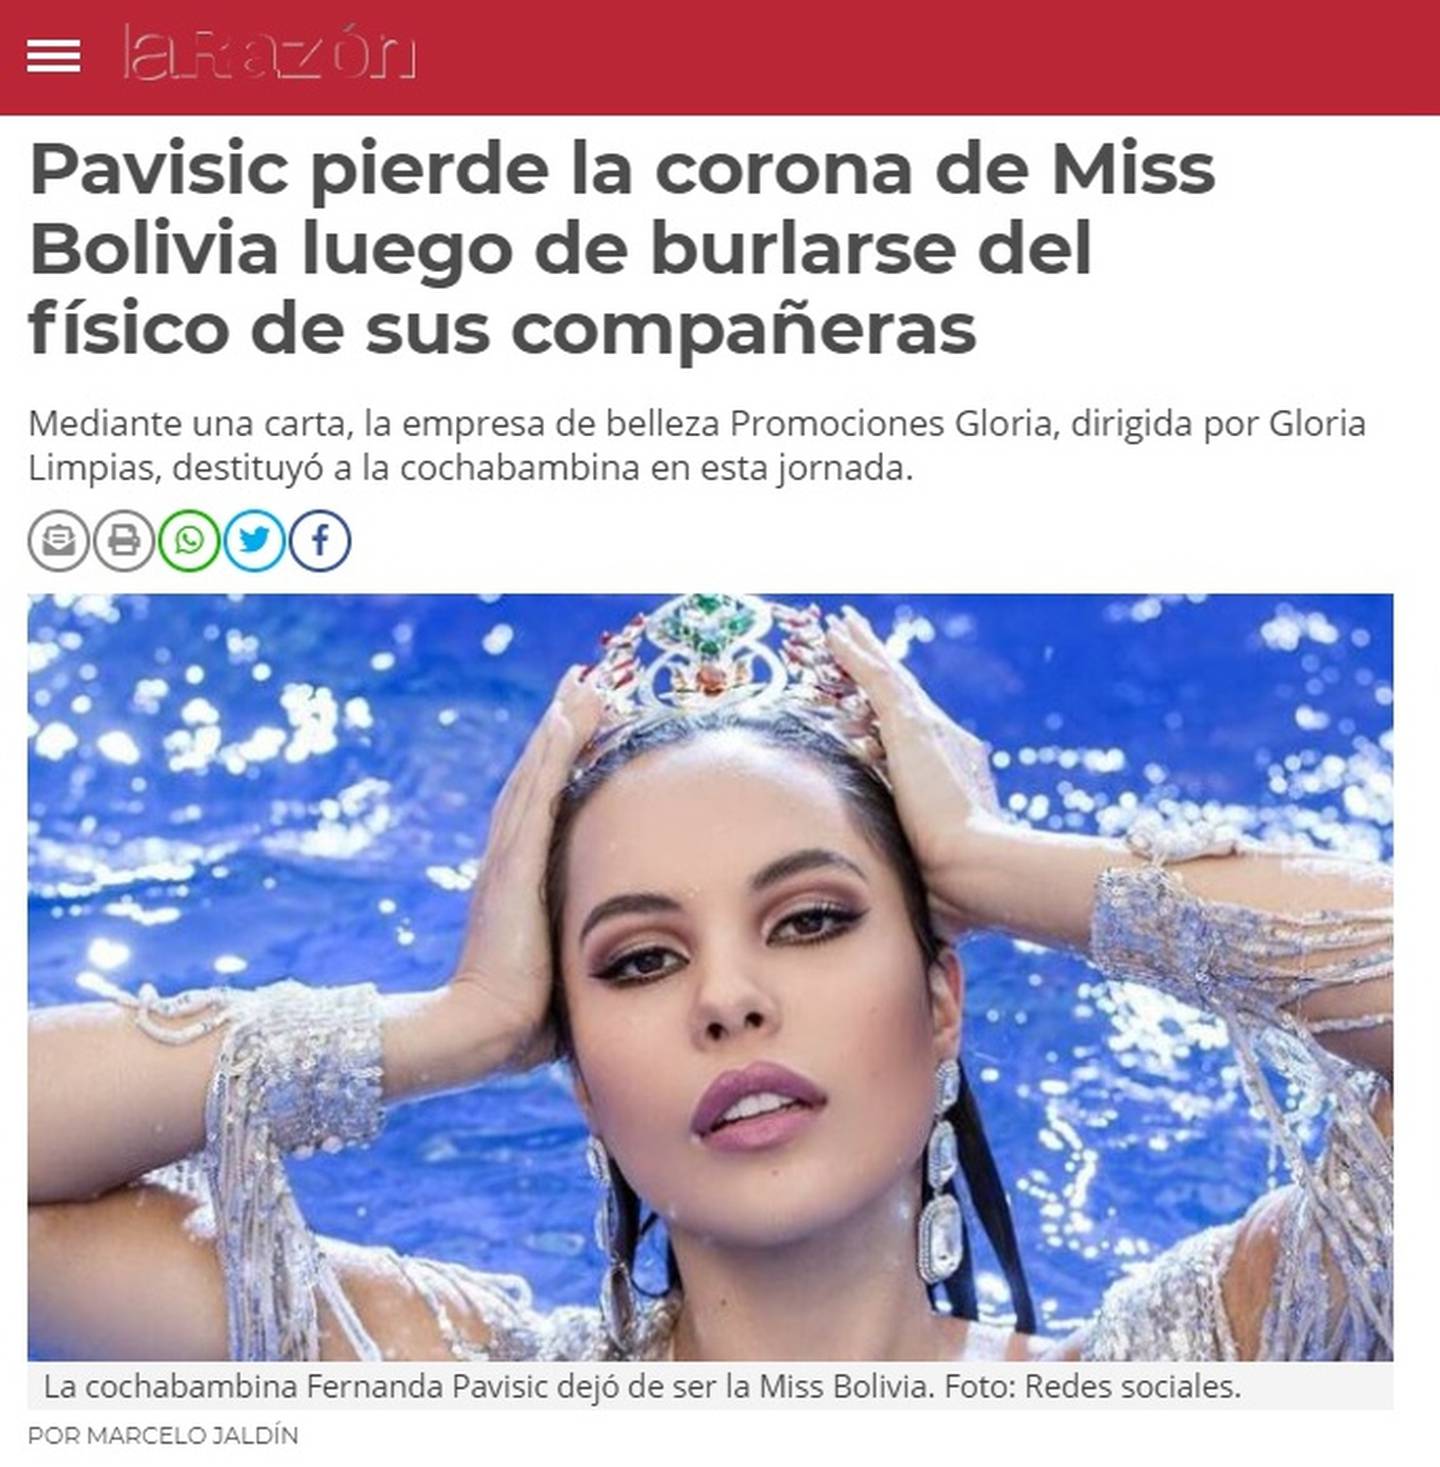 Los medios bolivianos difundieron ampliamente este jueves la noticia de la descalificación de Fernanda Pavisic como la representante del país altiplánico en el Miss Universo por haberse burlado de otras participantes del concurso de belleza.